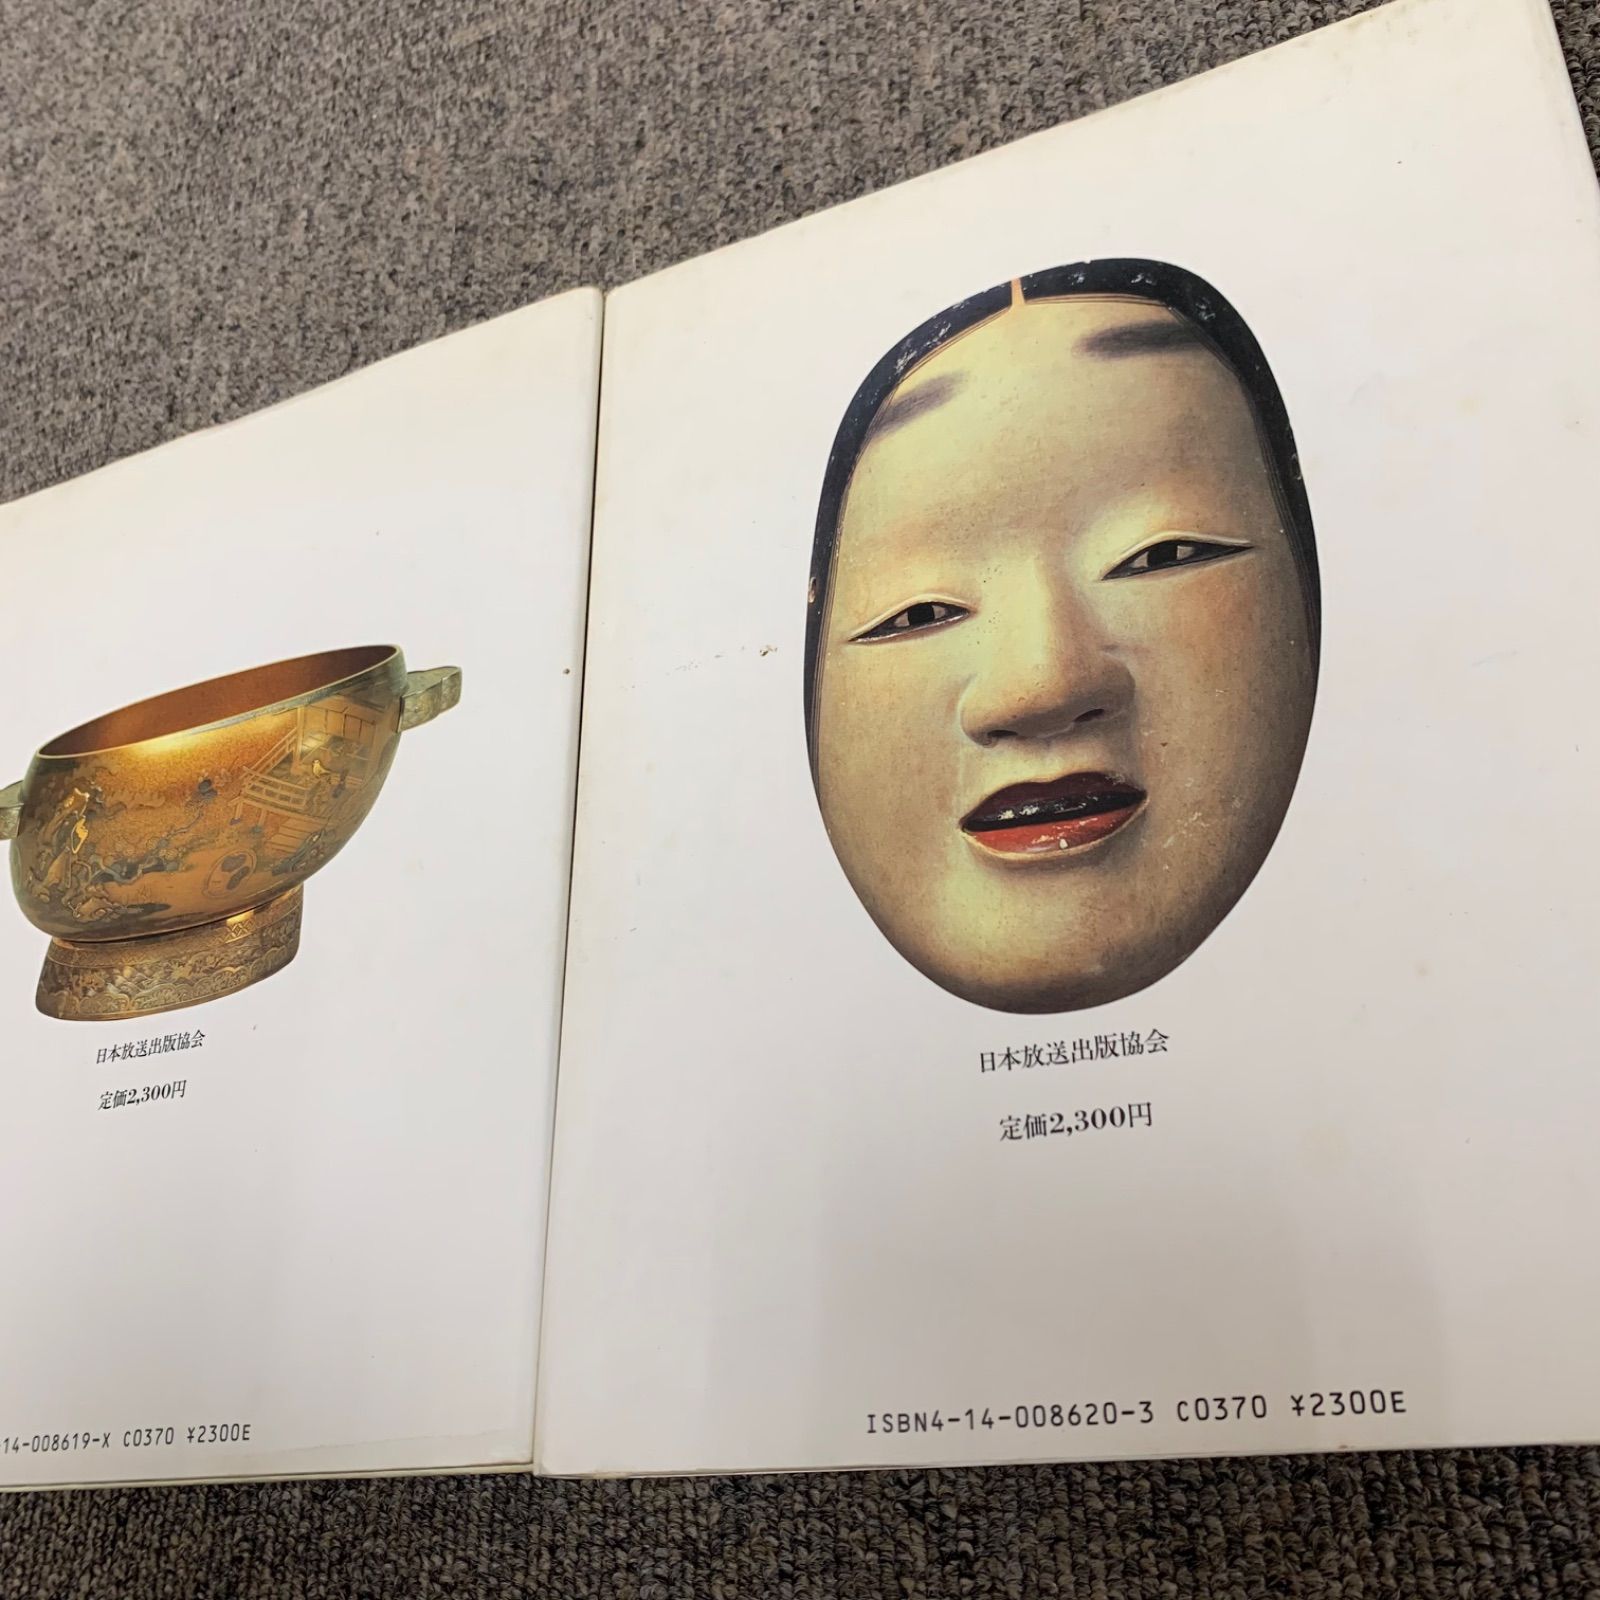 NHK 徳川美術館 全2巻セット ①奥道具の華 ②表道具の美 - メルカリ